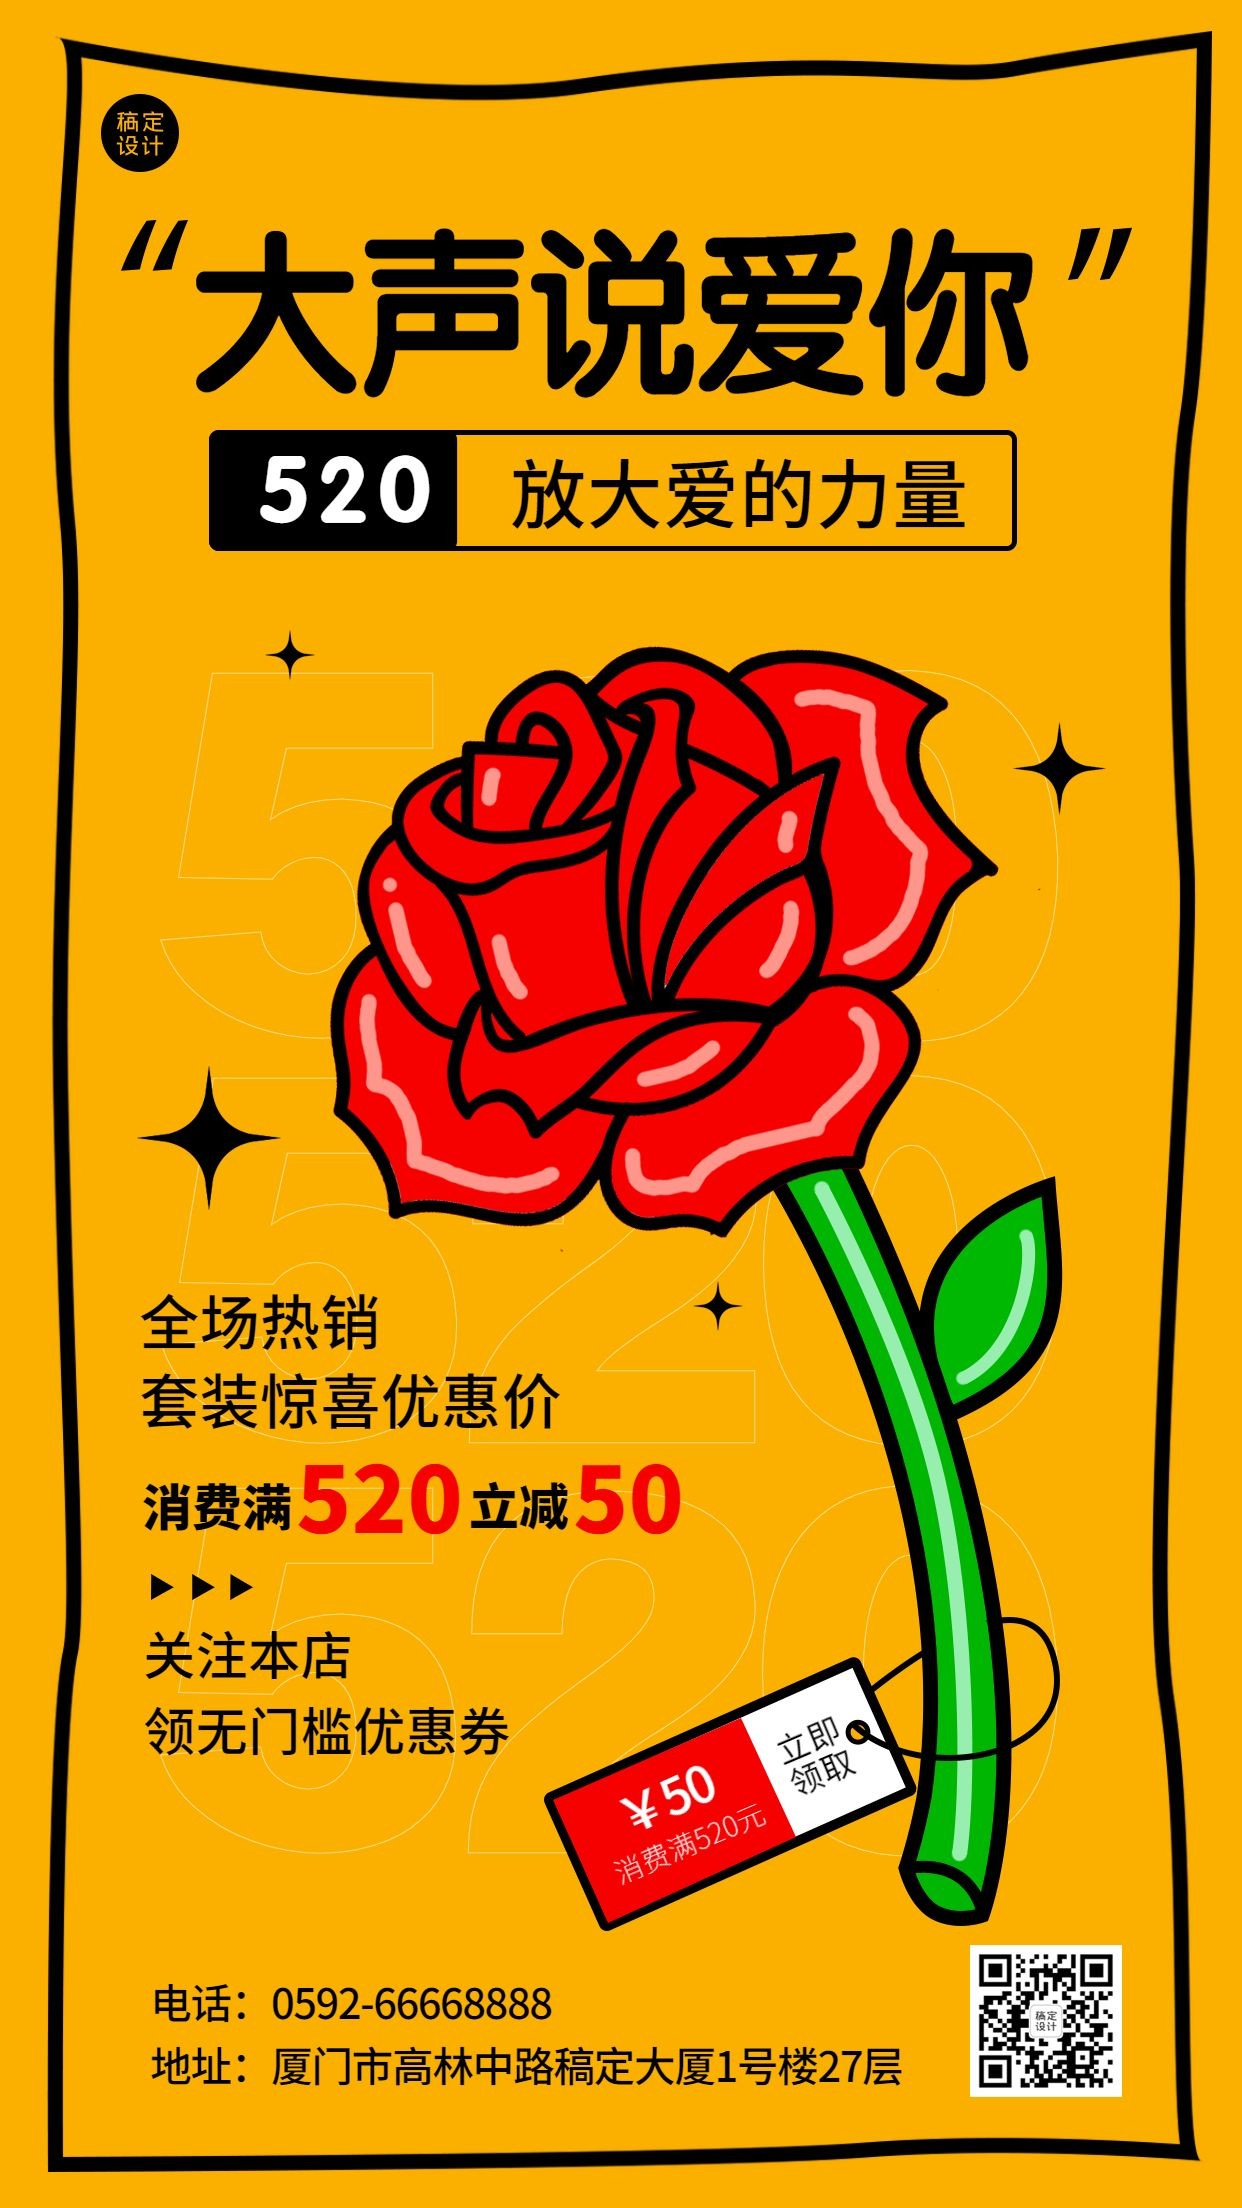 520情人节节日营销满减促销插画手机海报